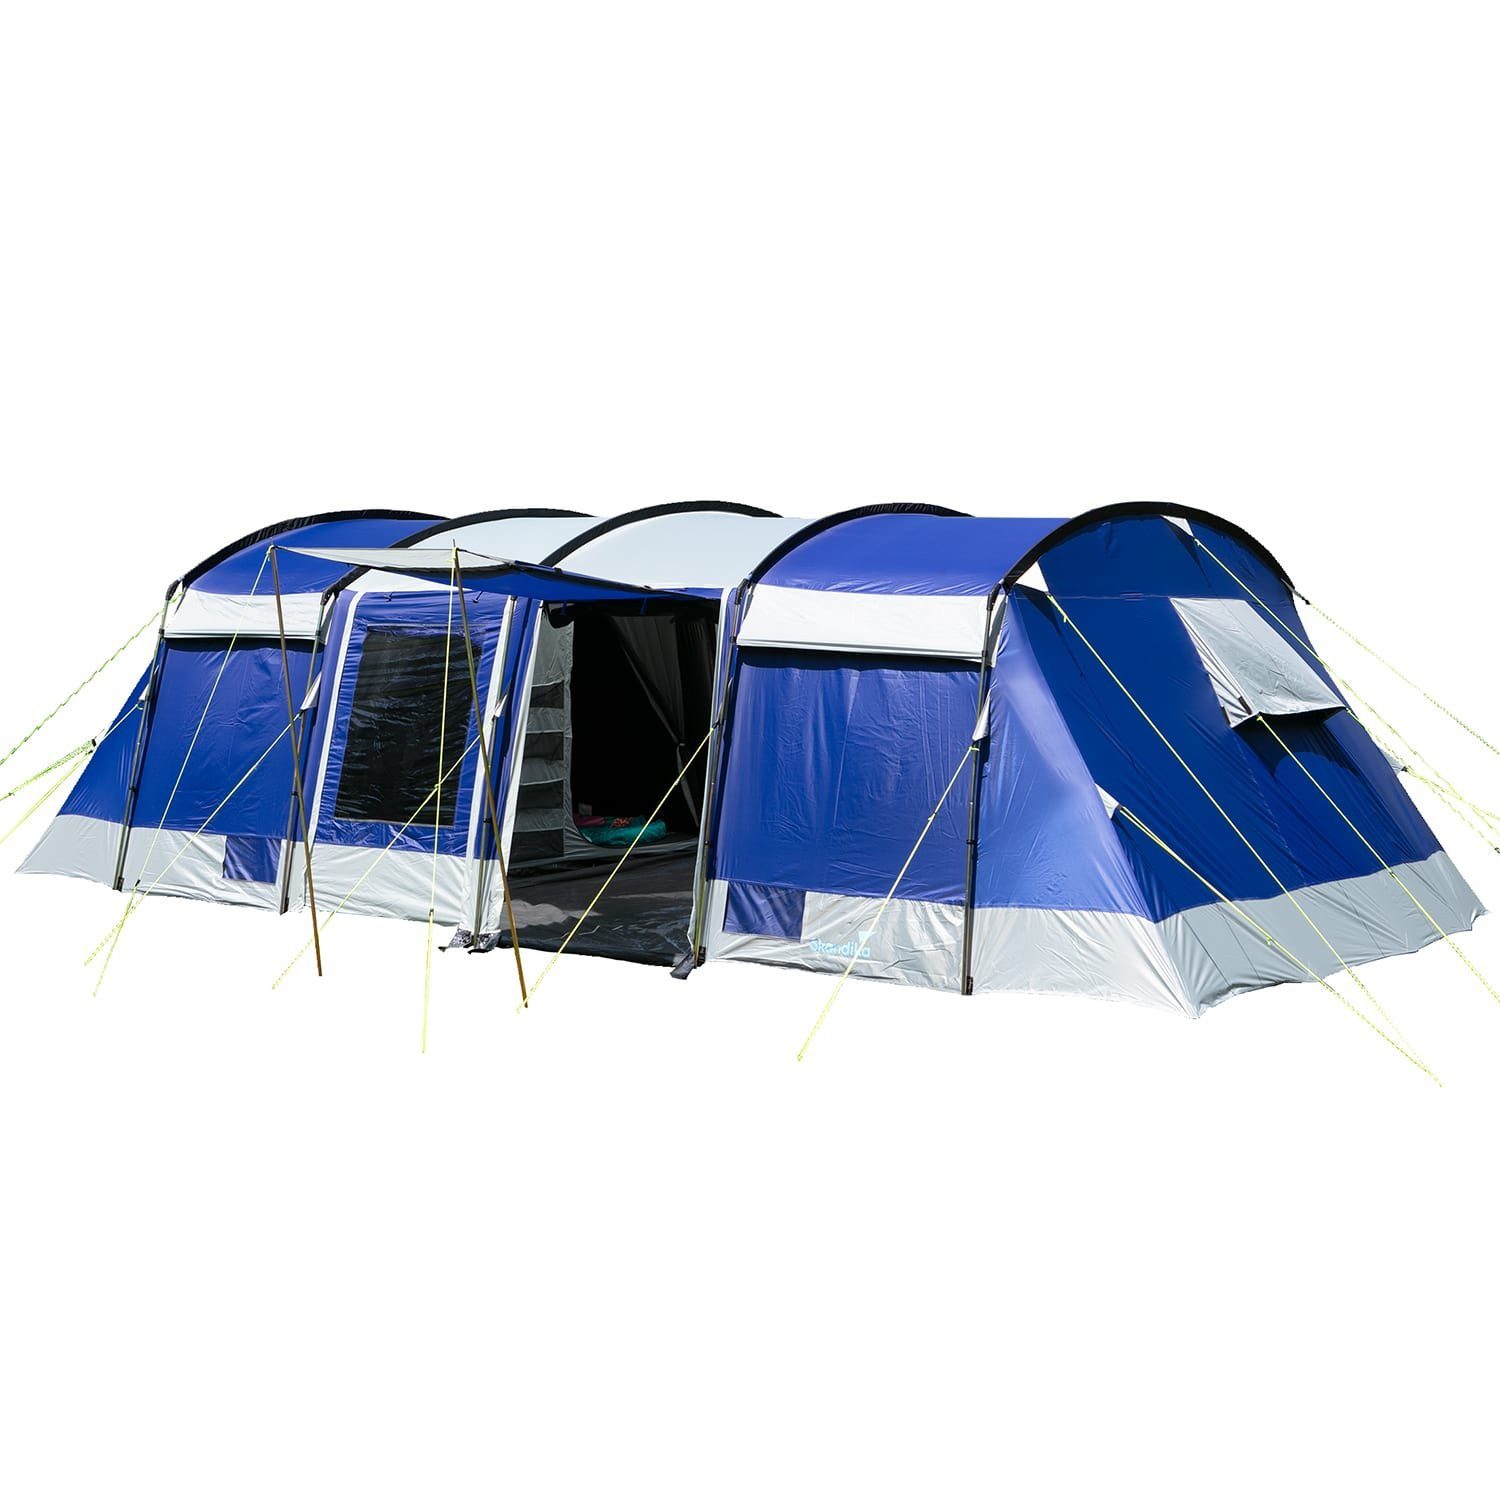 Skandika Tunnelzelt »Montana 10 Sleeper (blau)«, für 10 Personen, Camping  Zelt mit Sleeper Technologie, Schwarze und dunkle Schlafkabinen,  wasserdicht, 5000 mm Wassersäule, Moskitonetz, 4 Eingänge, Familienzelt